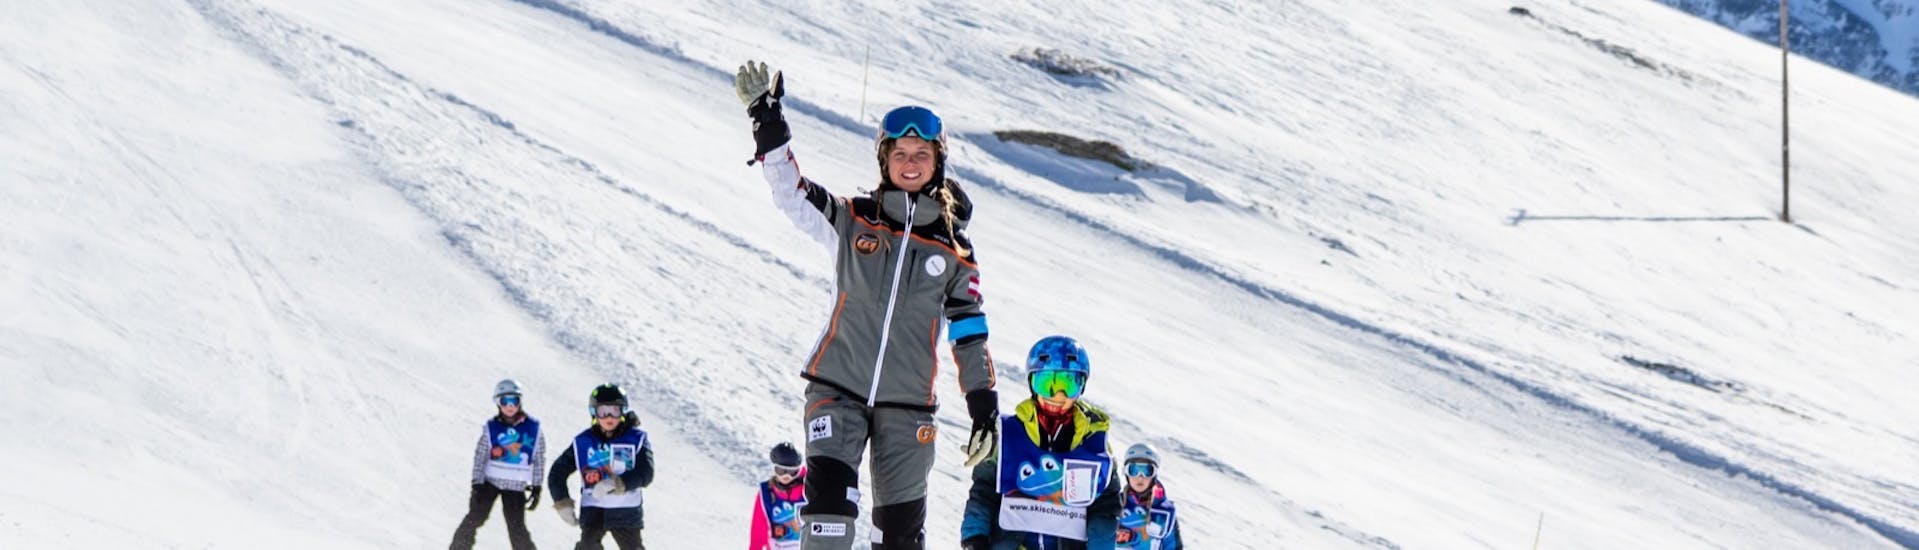 Clases de esquí para niños a partir de 4 años para avanzados.